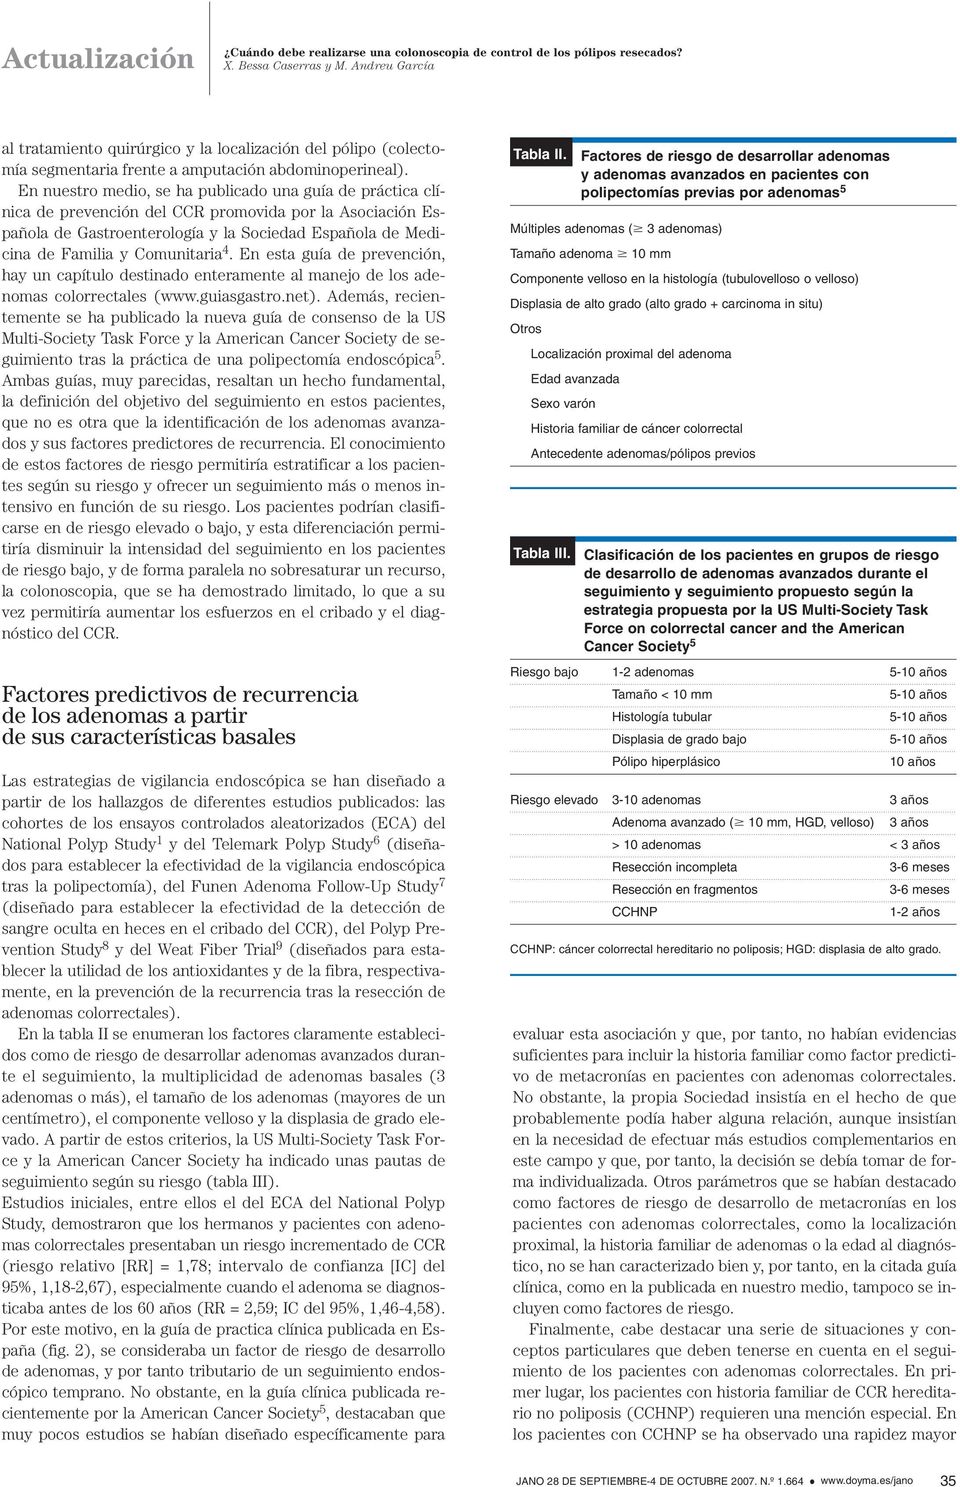 Comunitaria 4. En esta guía de prevención, hay un capítulo destinado enteramente al manejo de los adenomas colorrectales (www.guiasgastro.net).